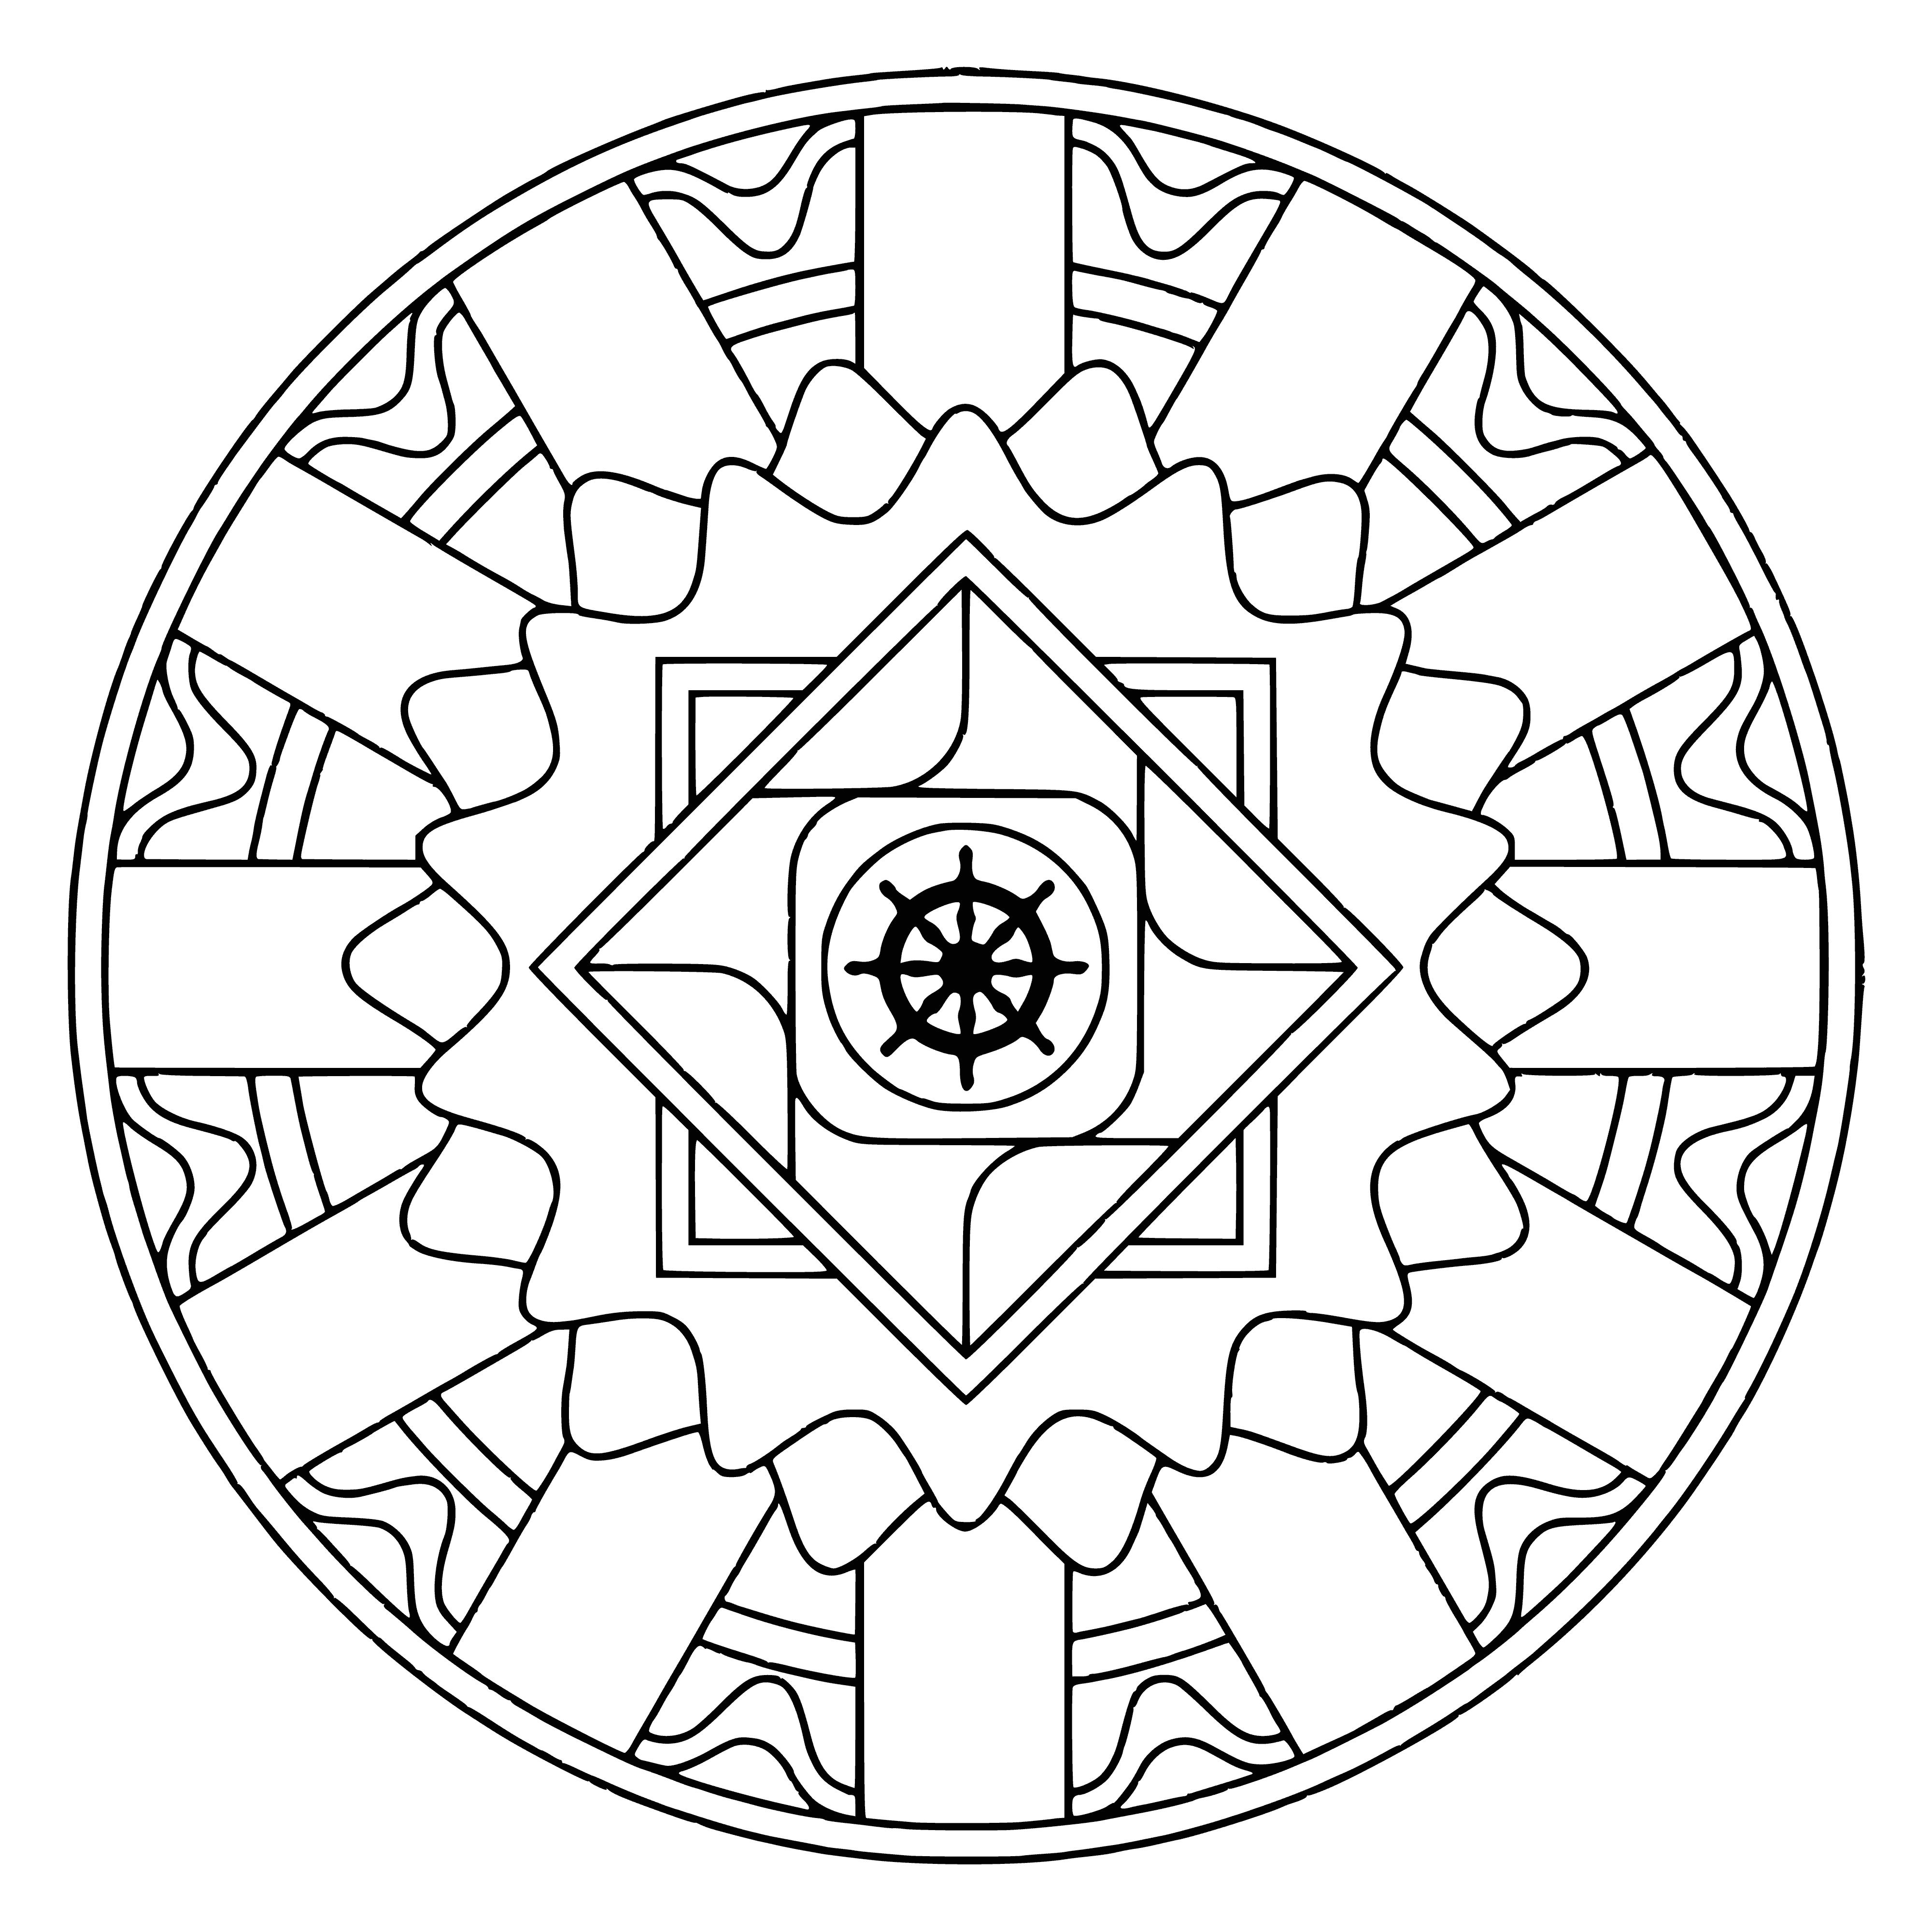 Mandala with Wheel of Samsara coloring page